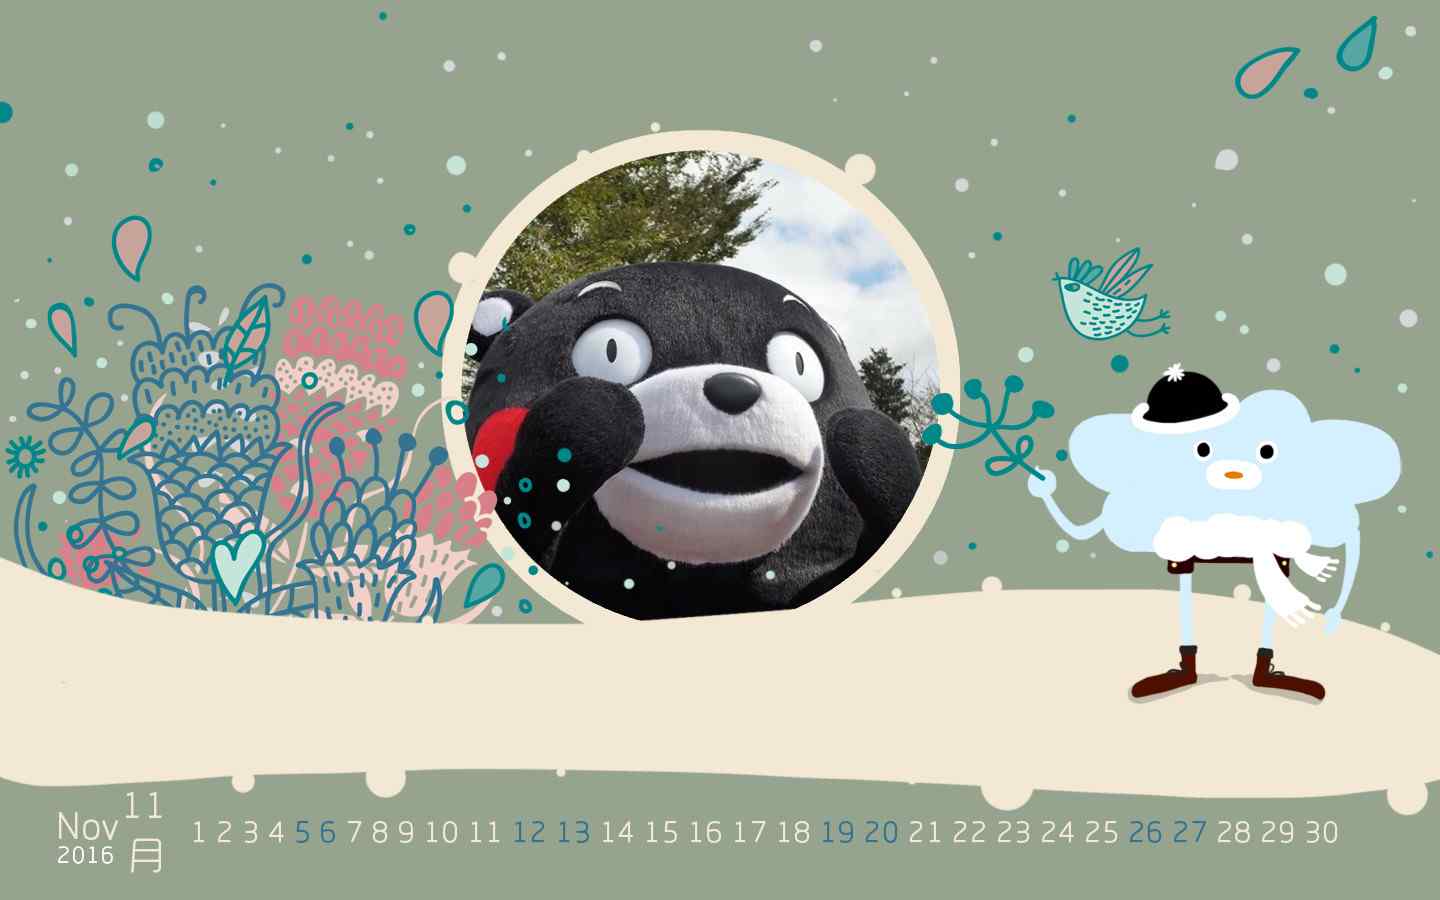 可爱搞怪熊本熊2016年11月日历壁纸